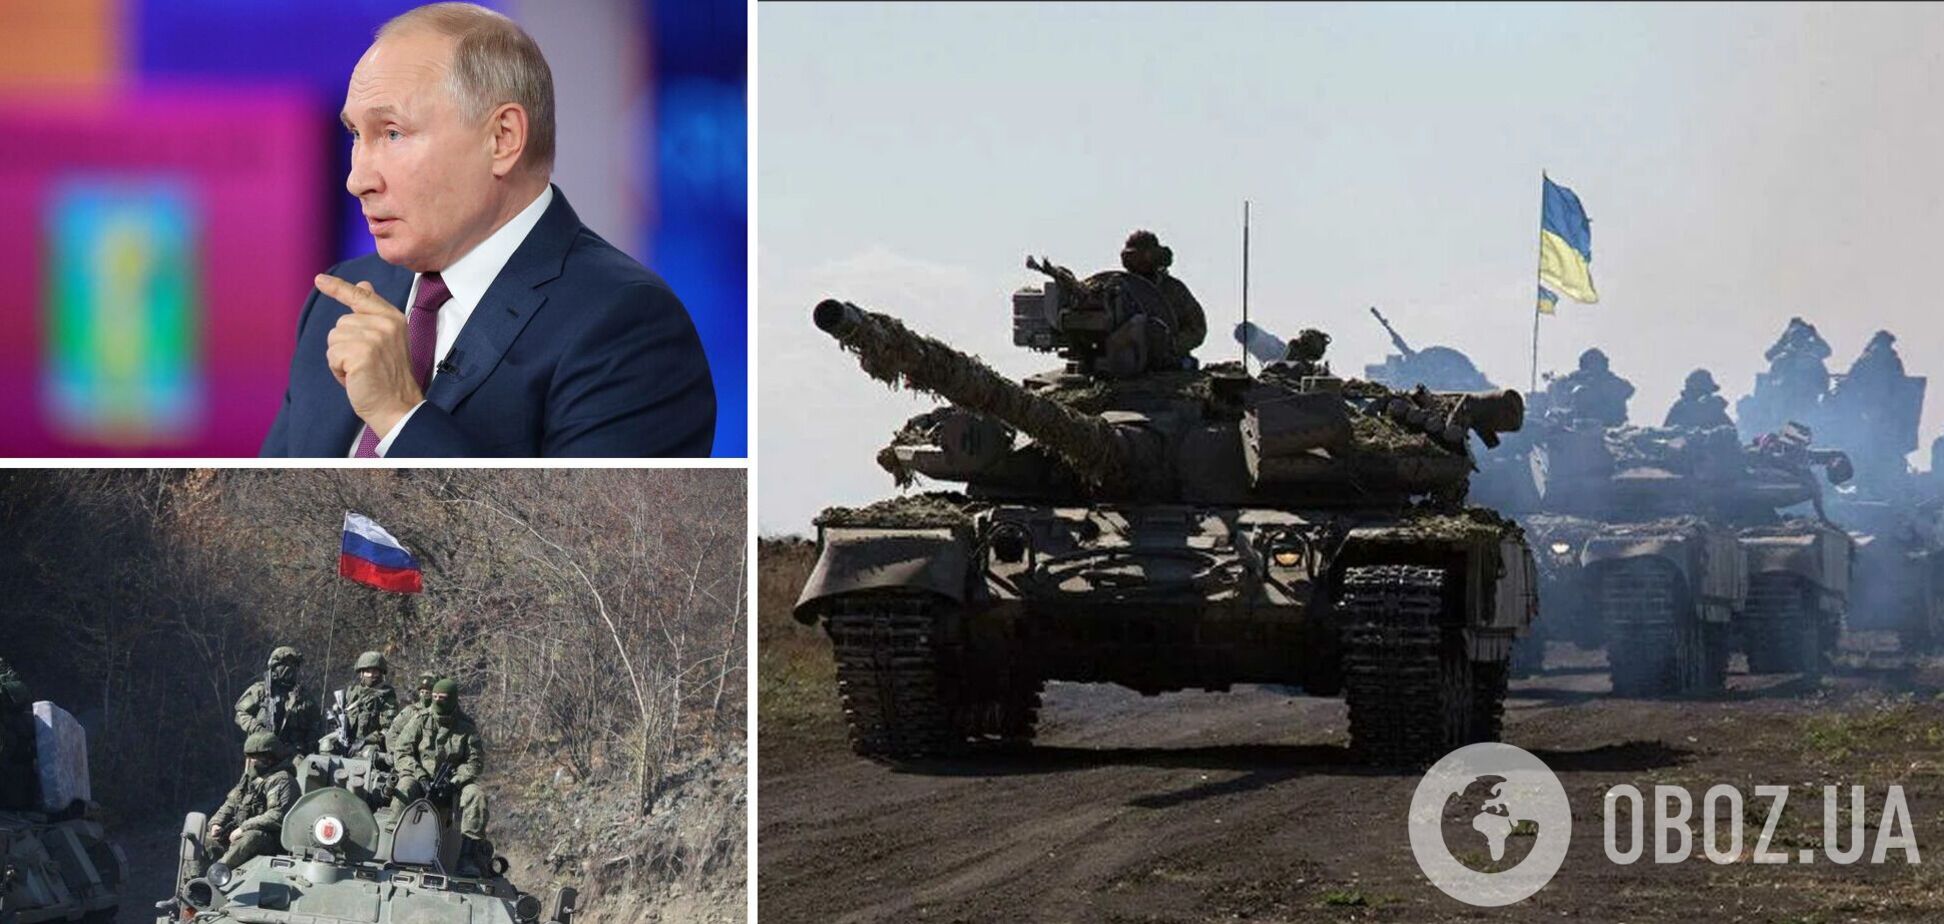 Путин должен понять, что вторжение в Харьков обернется огромными потерями для РФ, – Аваков